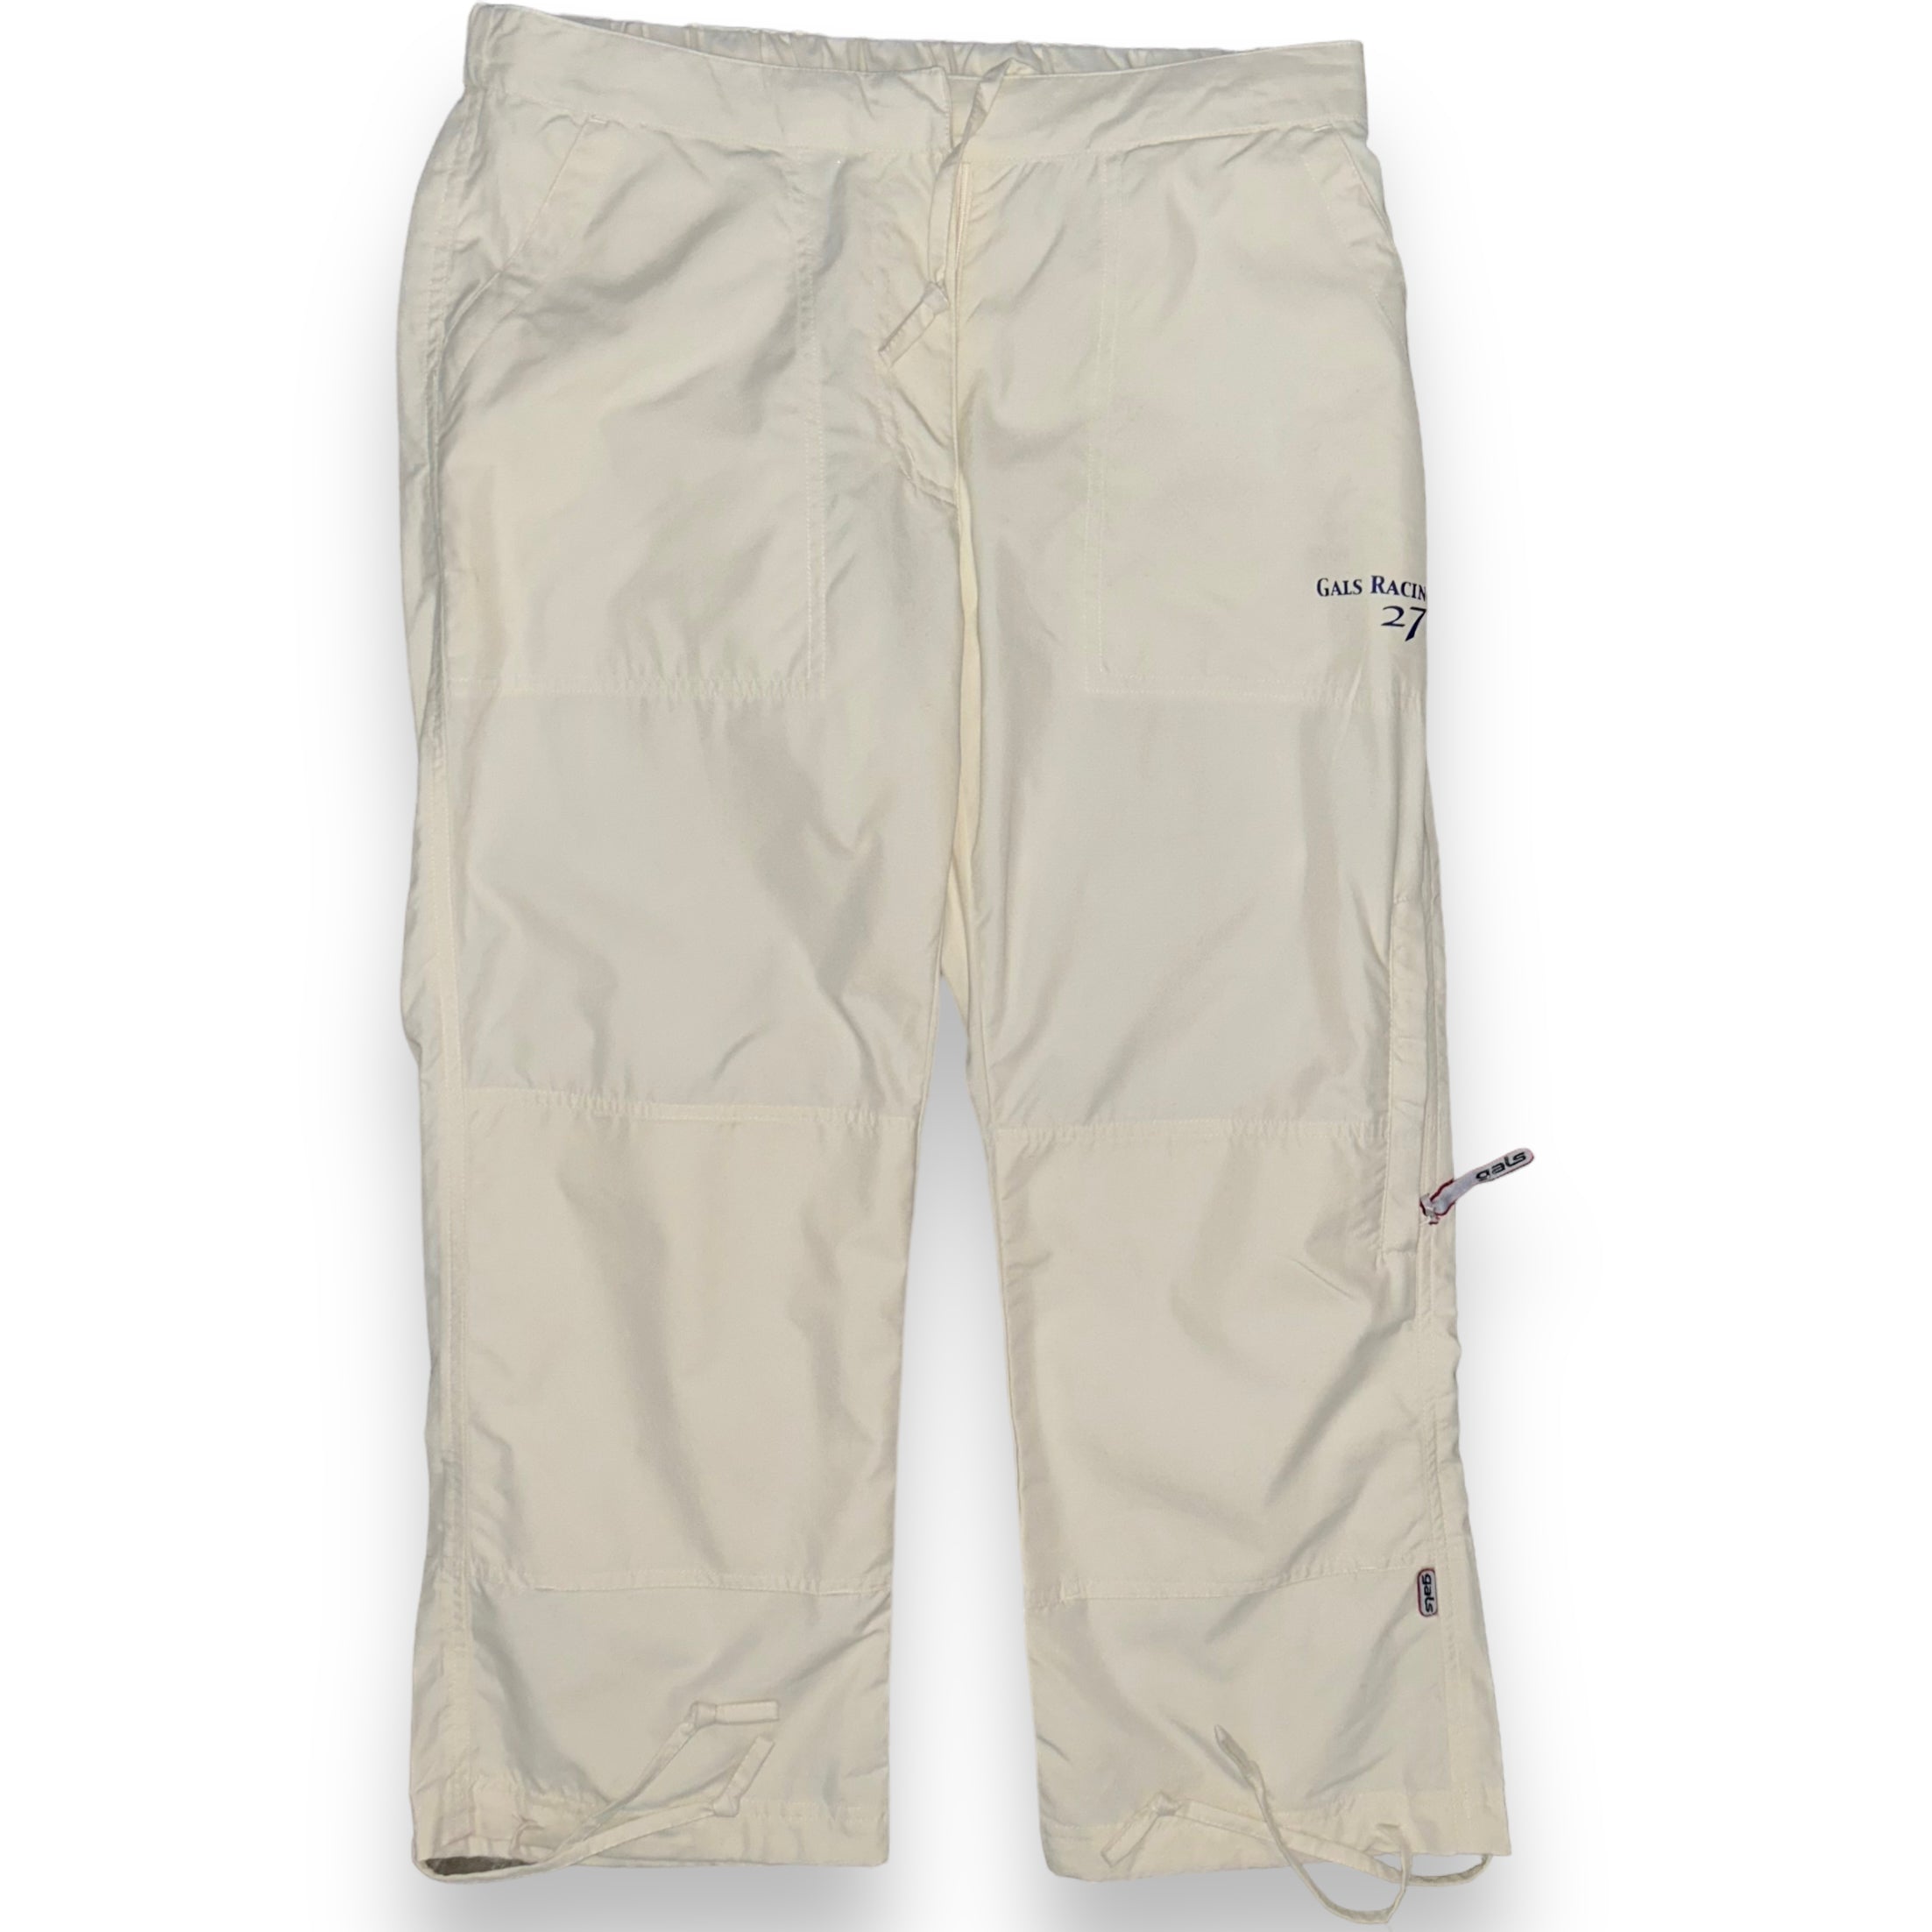 Pantaloni corti US40  (S/M)